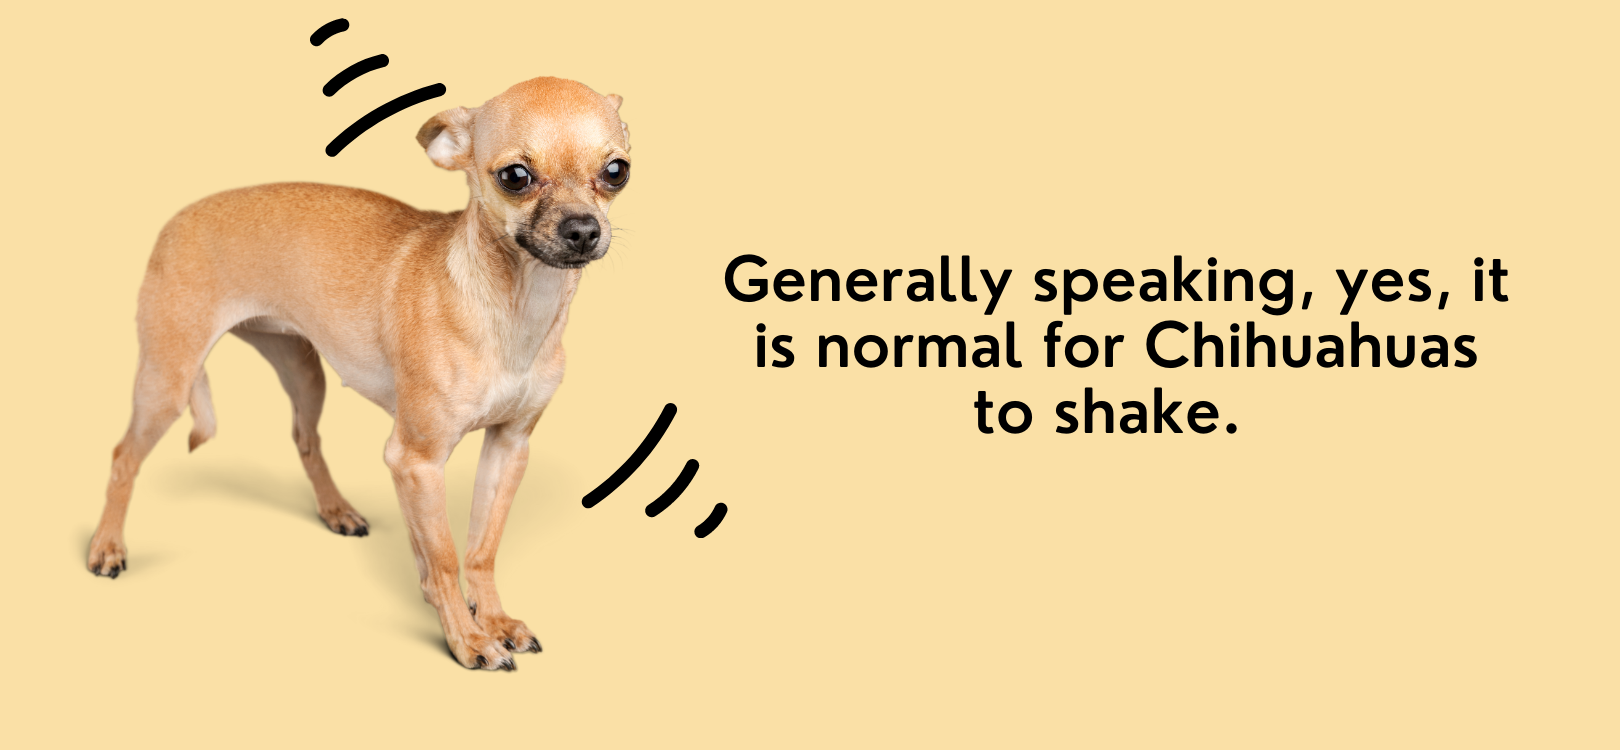 why do chihuahuas shake so much